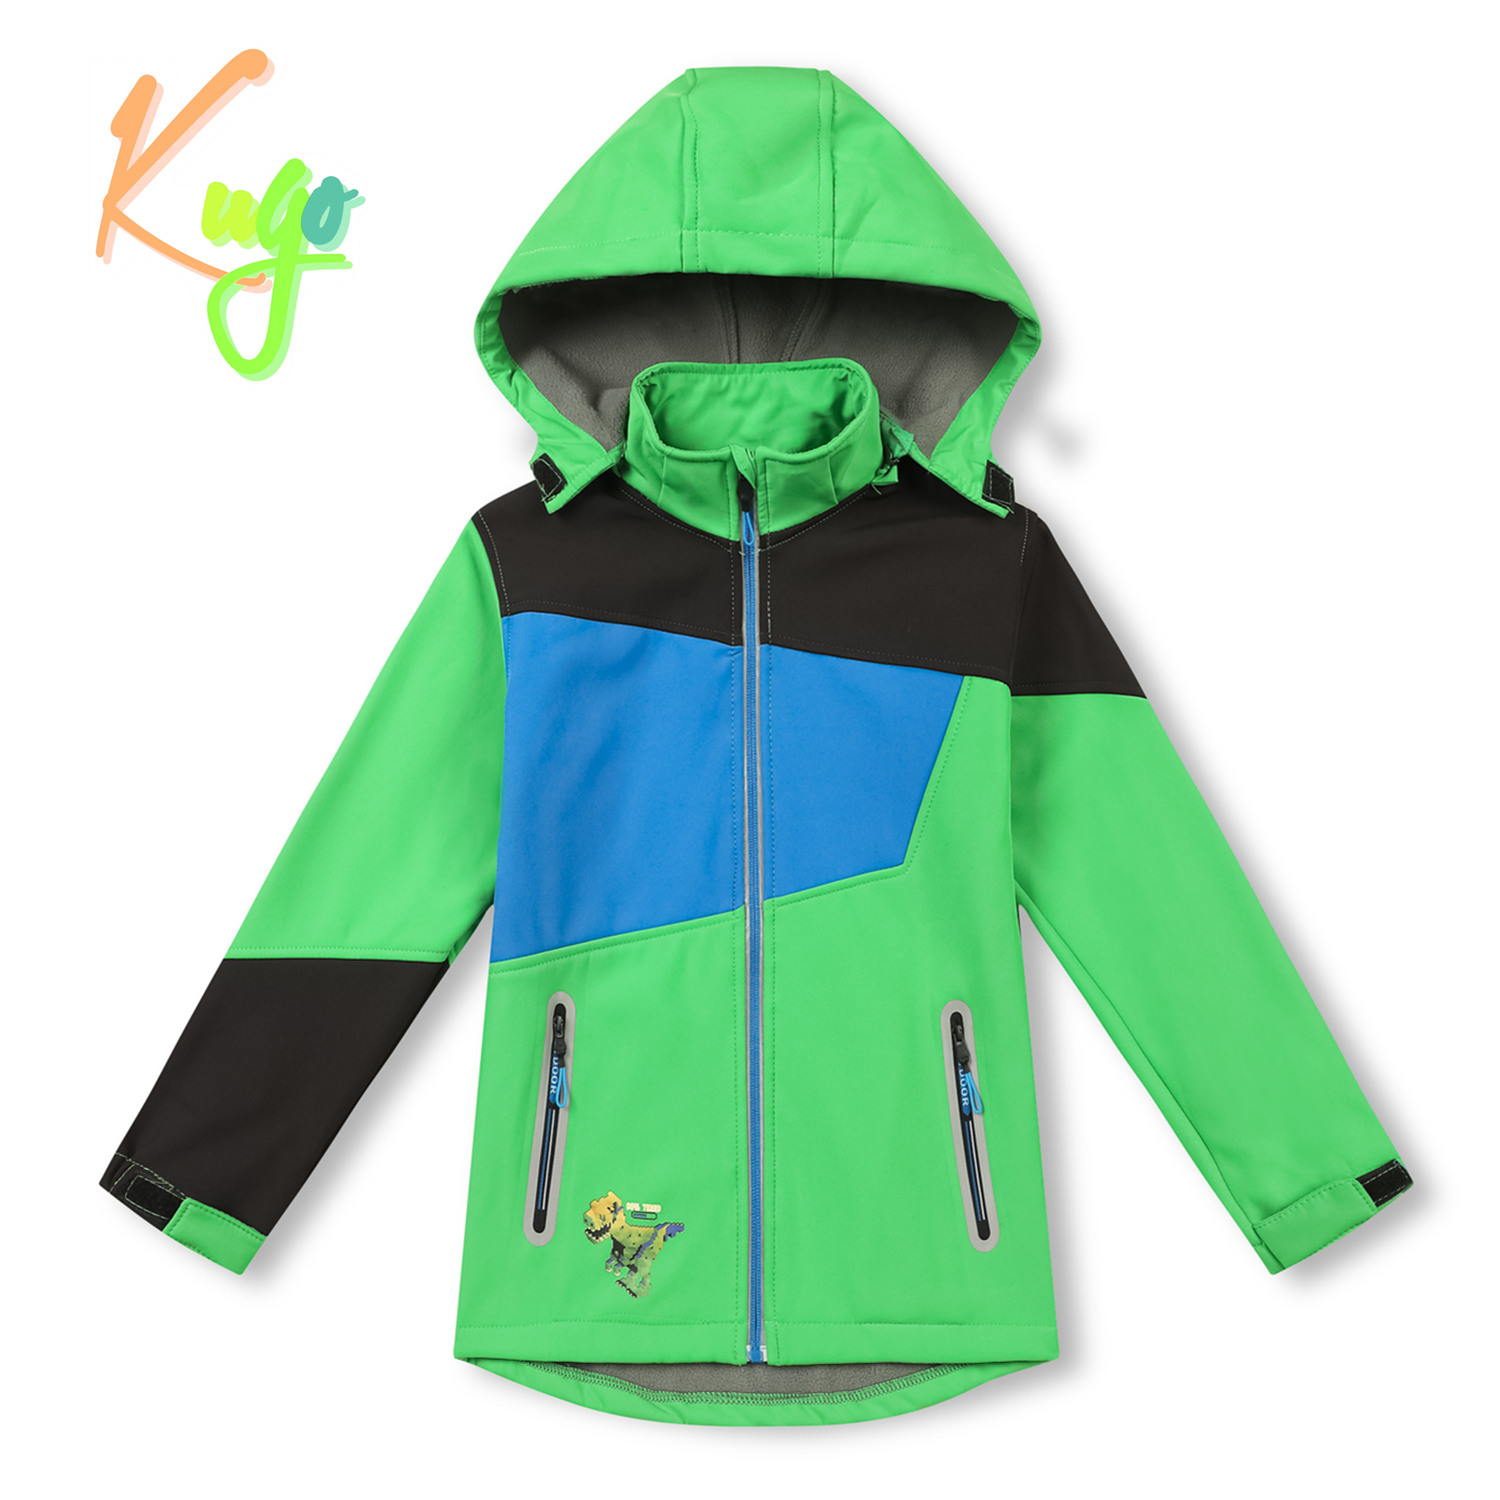 Chlapecká softshellová bunda, zateplená - KUGO HK2525, zelená Barva: Zelená, Velikost: 98